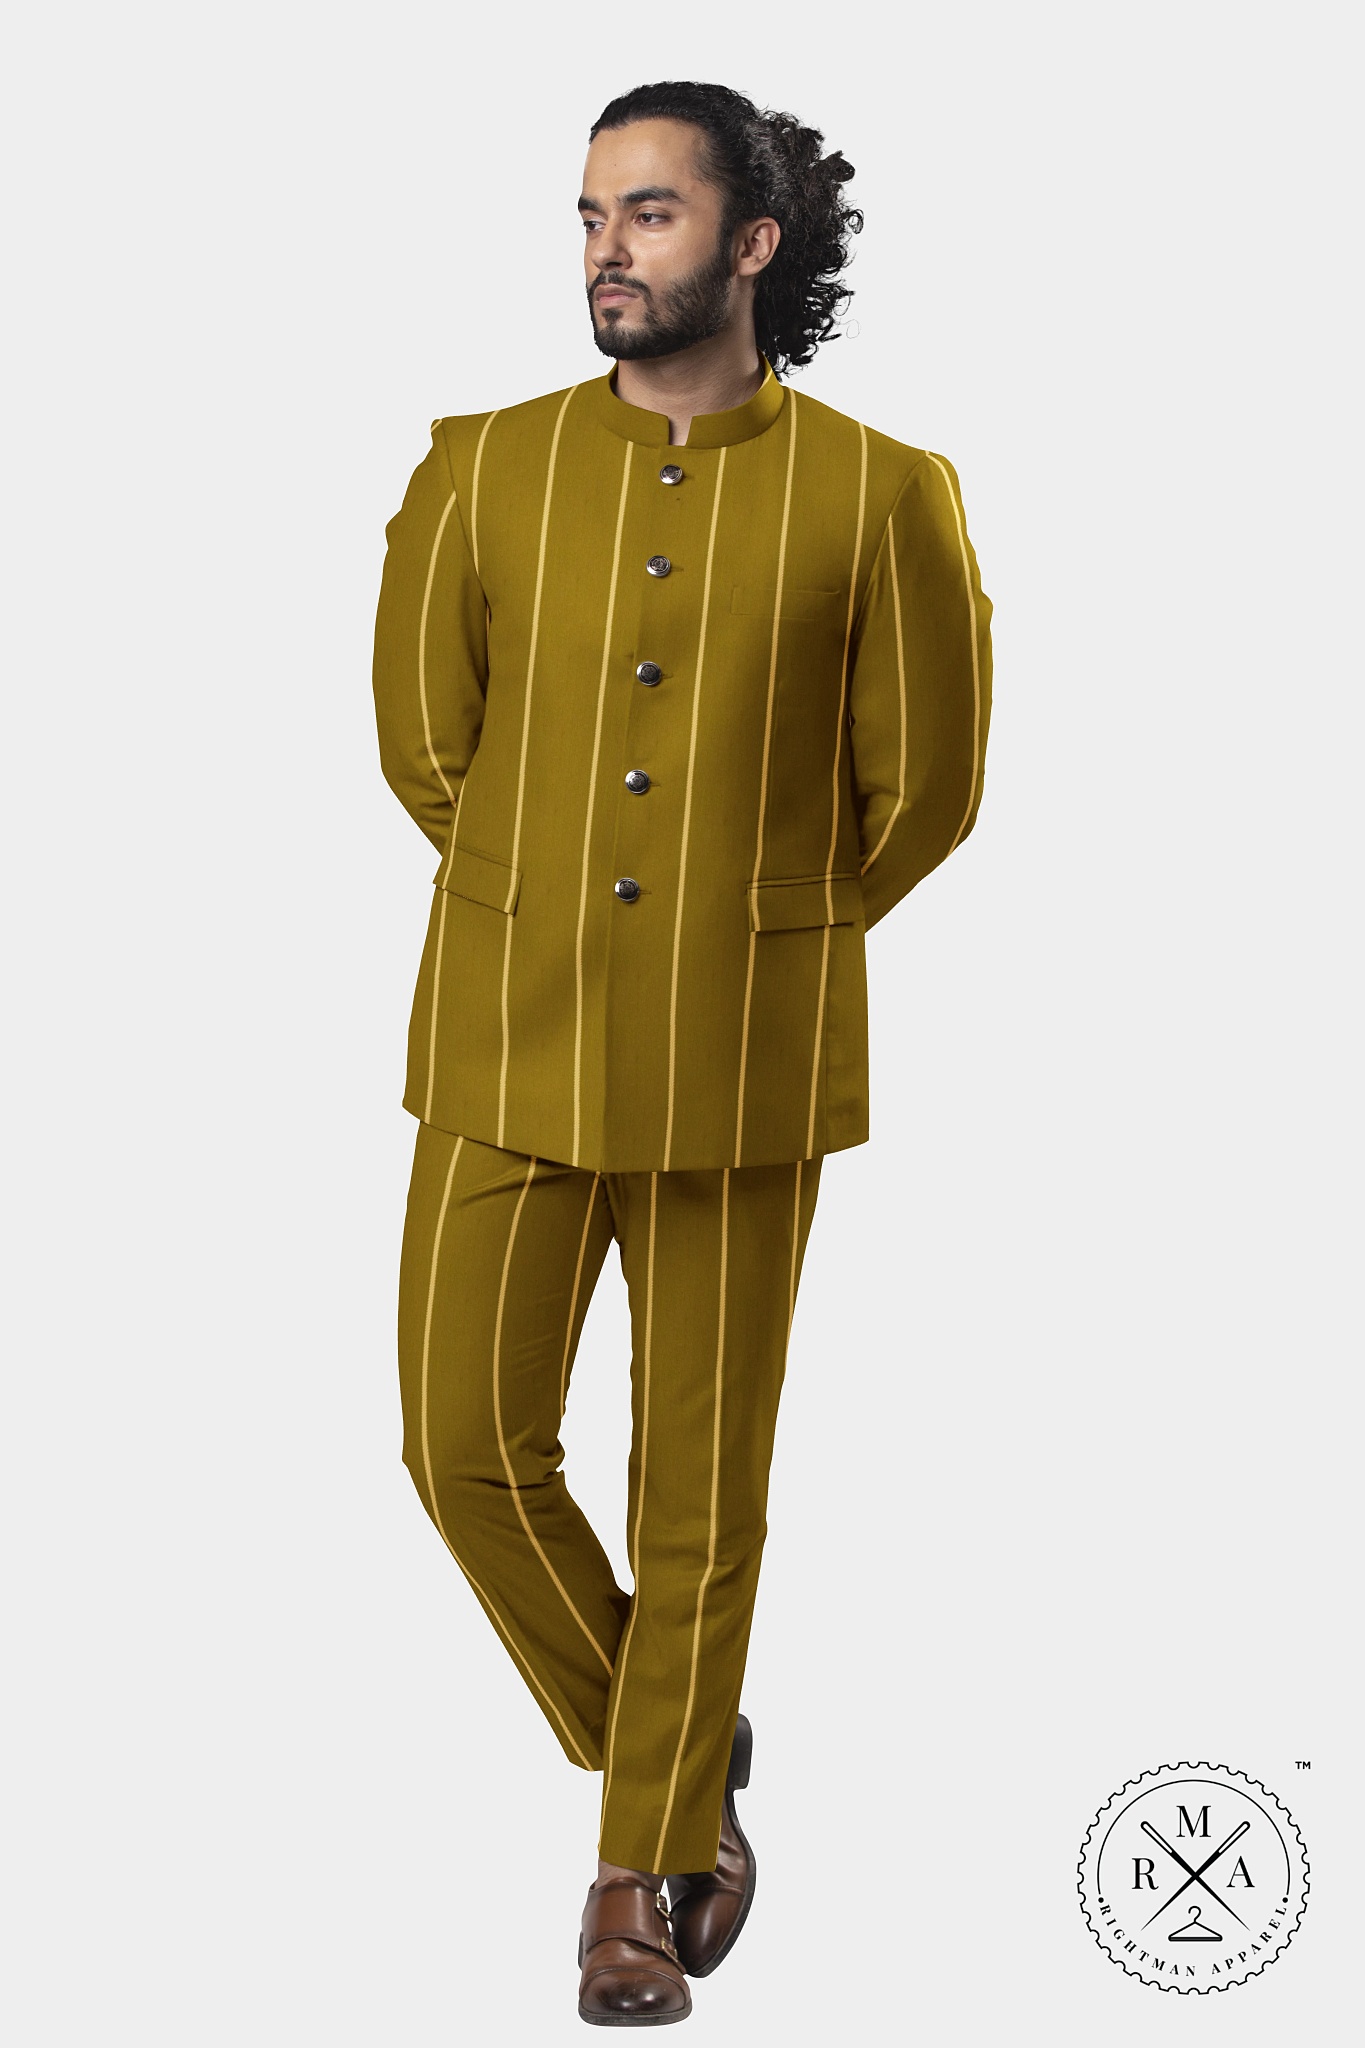 Dijon Yellow TR Jodhpuri Suit With Stripes SU45